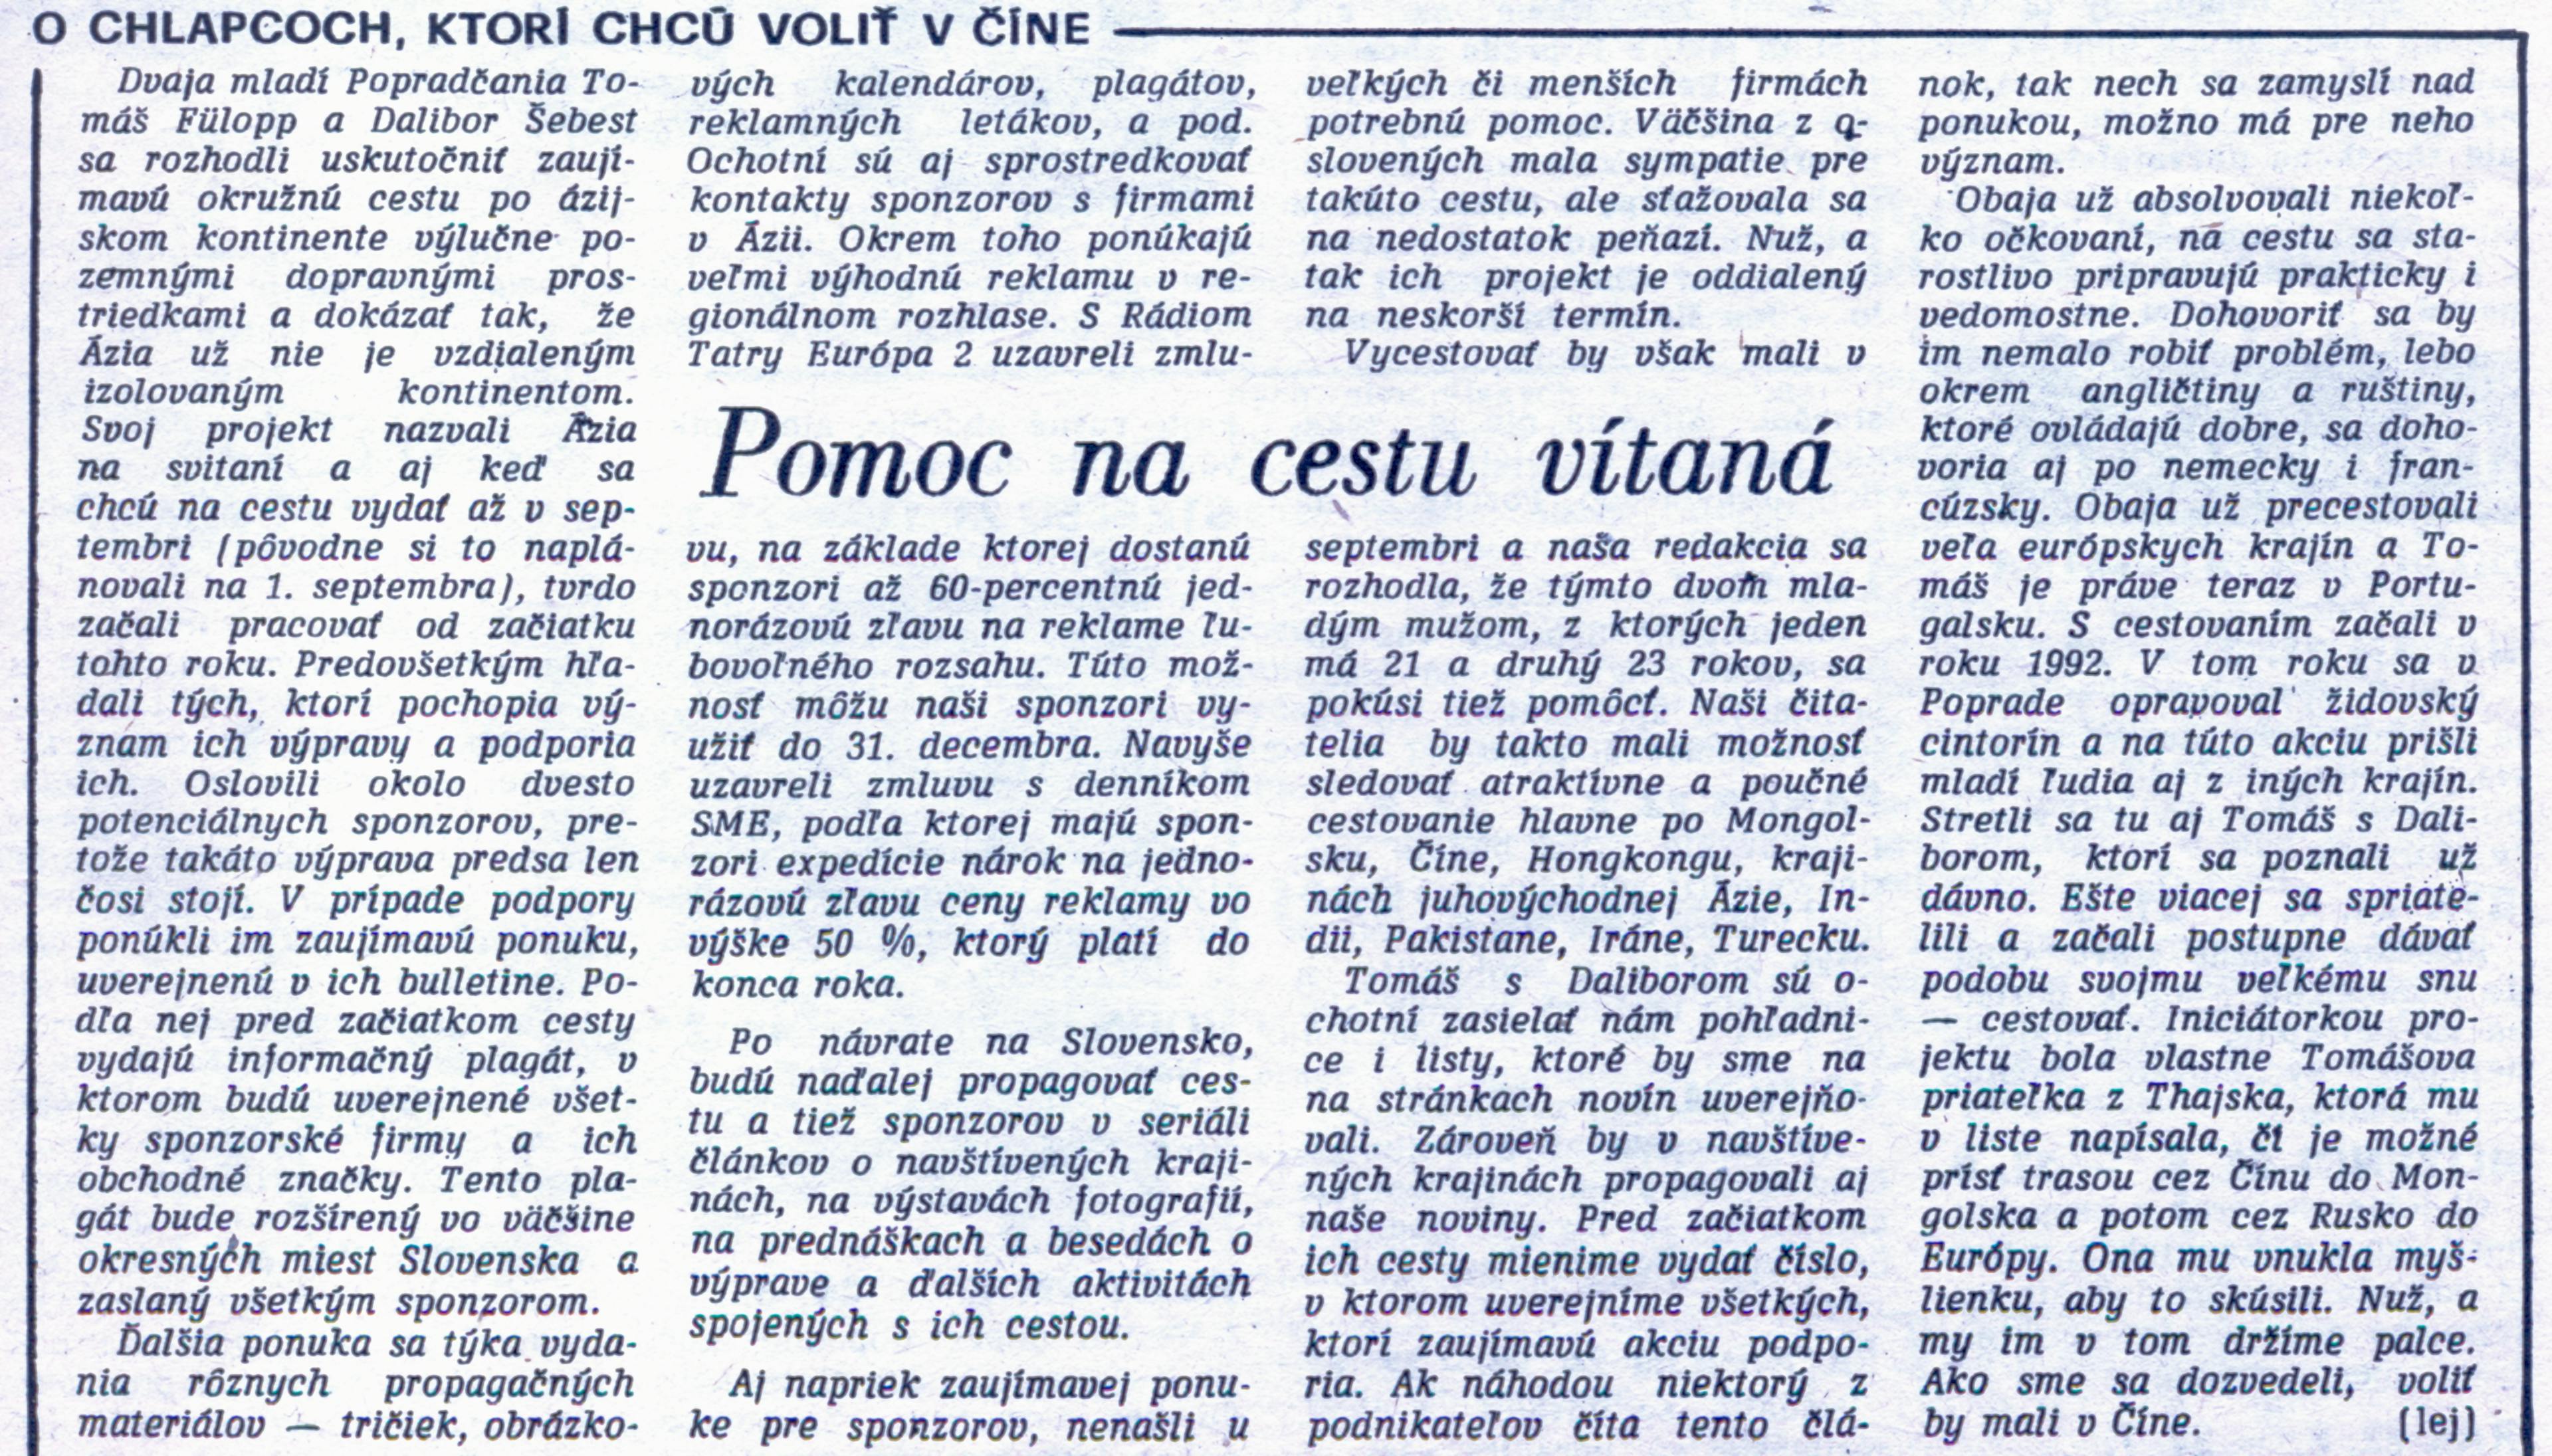 Článok v novinách Poprad č. 61 z 5. augusta 1994 (Mária Lejnarová  |  Poprad)